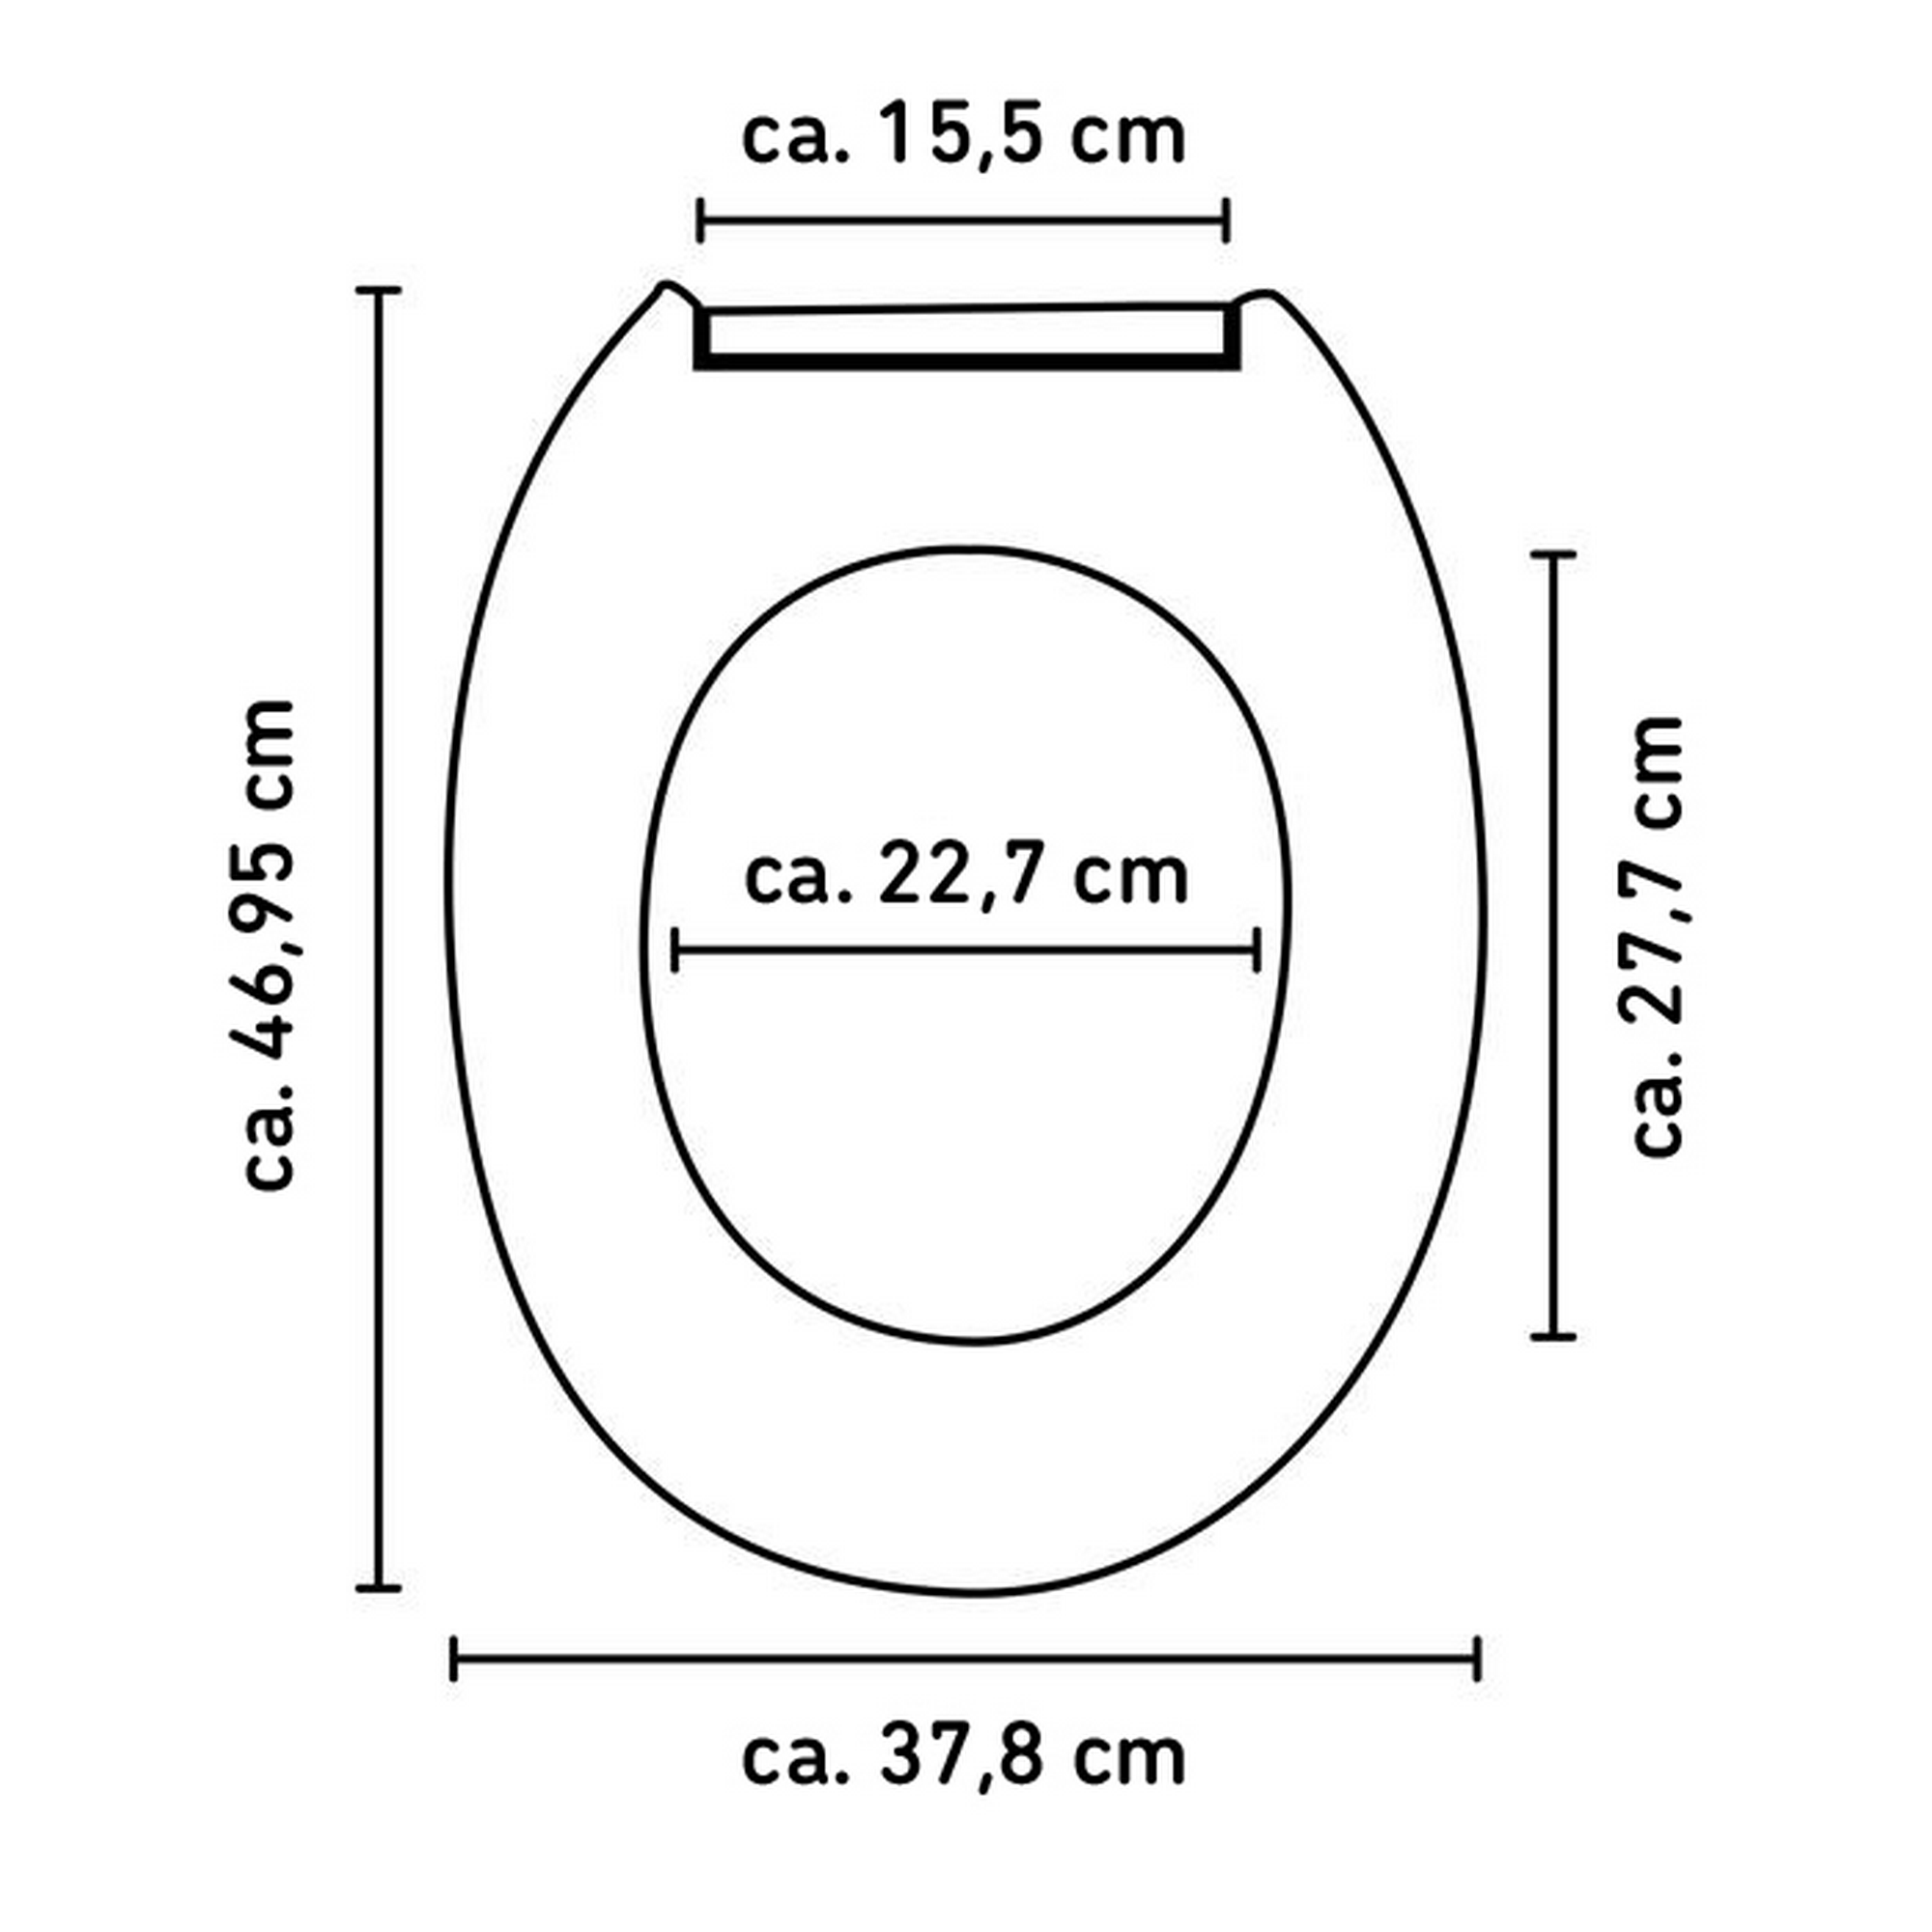 WC-Sitz 'Glitzer' mit Absenkautomatik und SoftTouch-Oberfläche bunt + product picture